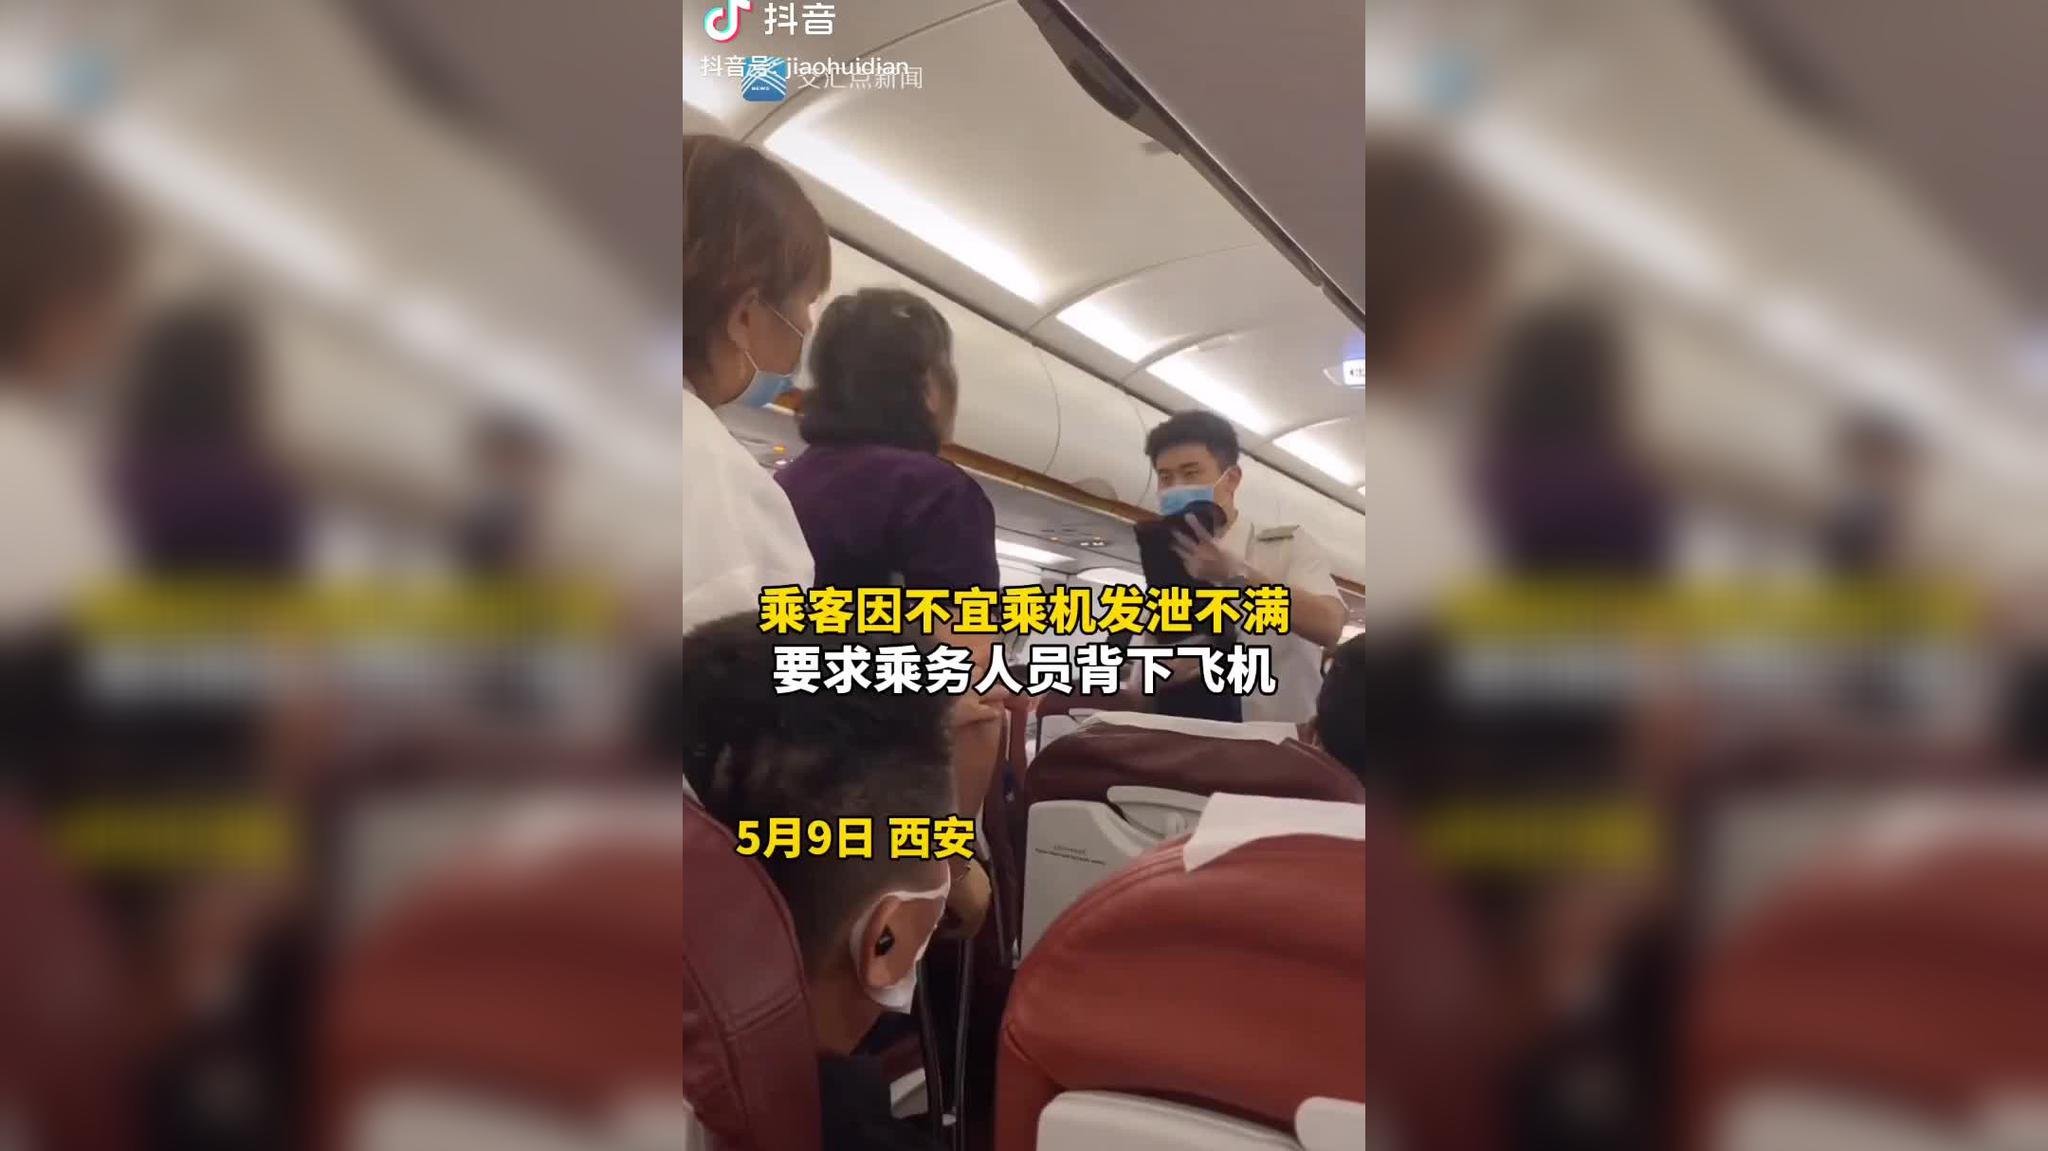 首都机场警方通报女子强行占座致飞机滑回:将其依法带